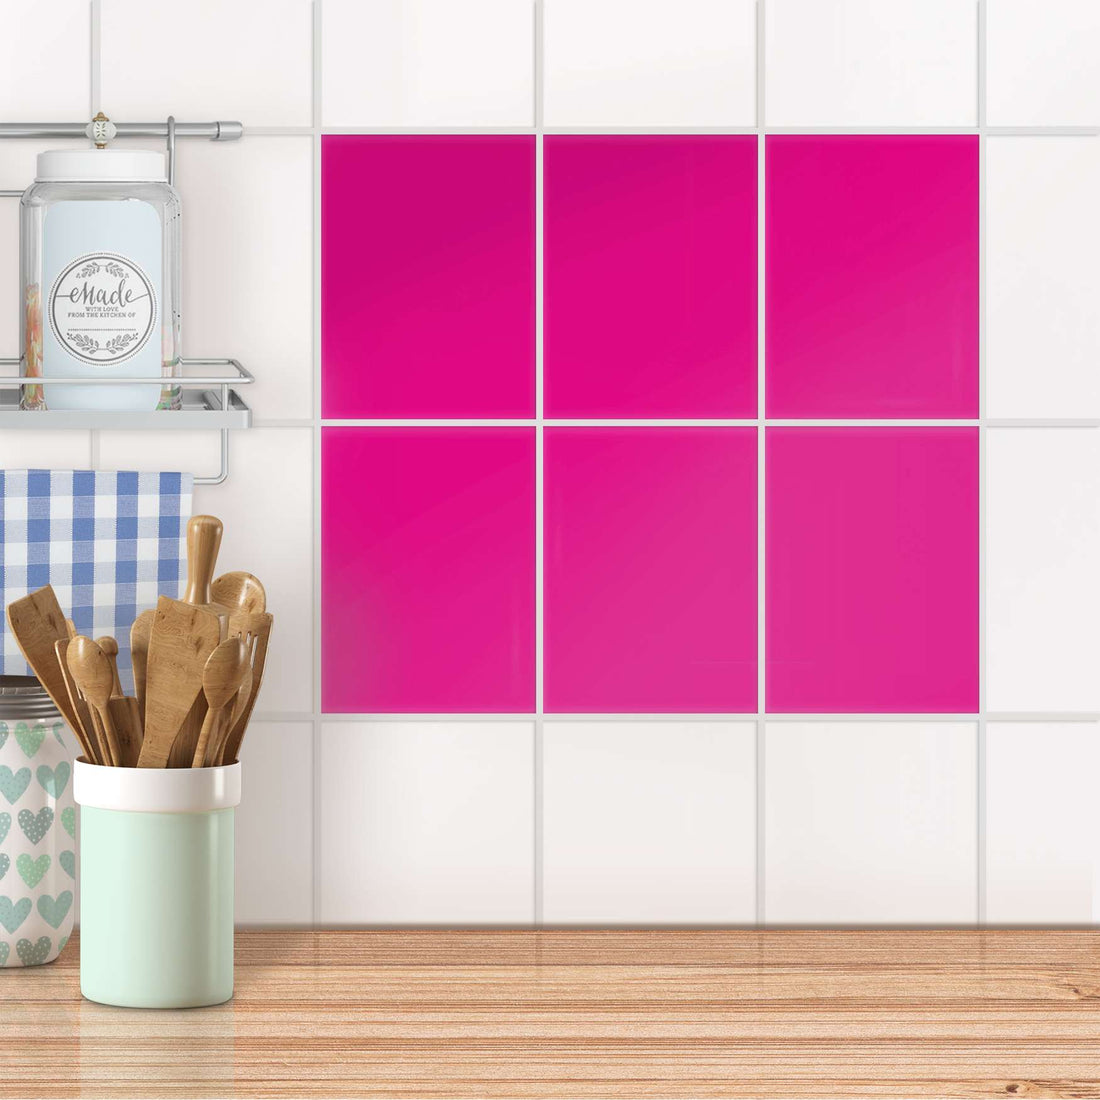 Fliesensticker unifarben Küche - Pink Dark